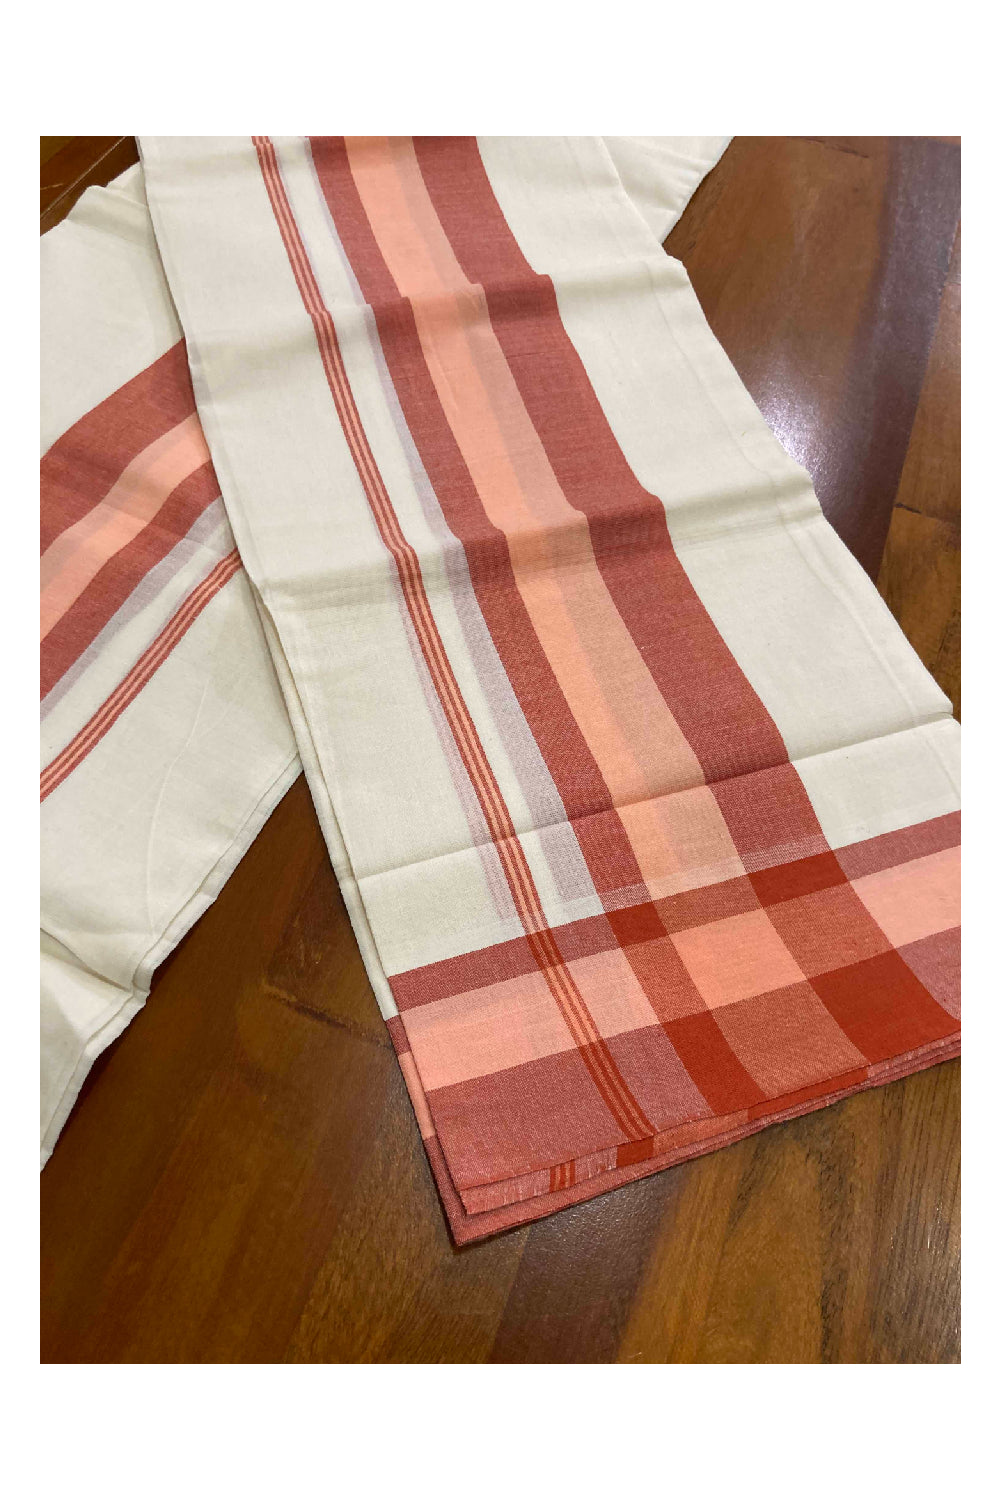 Kerala Cotton Mundum Neriyathum Single (Set Mundu) with Mulloth Design Orange and Red Border (Extra Soft Cotton)